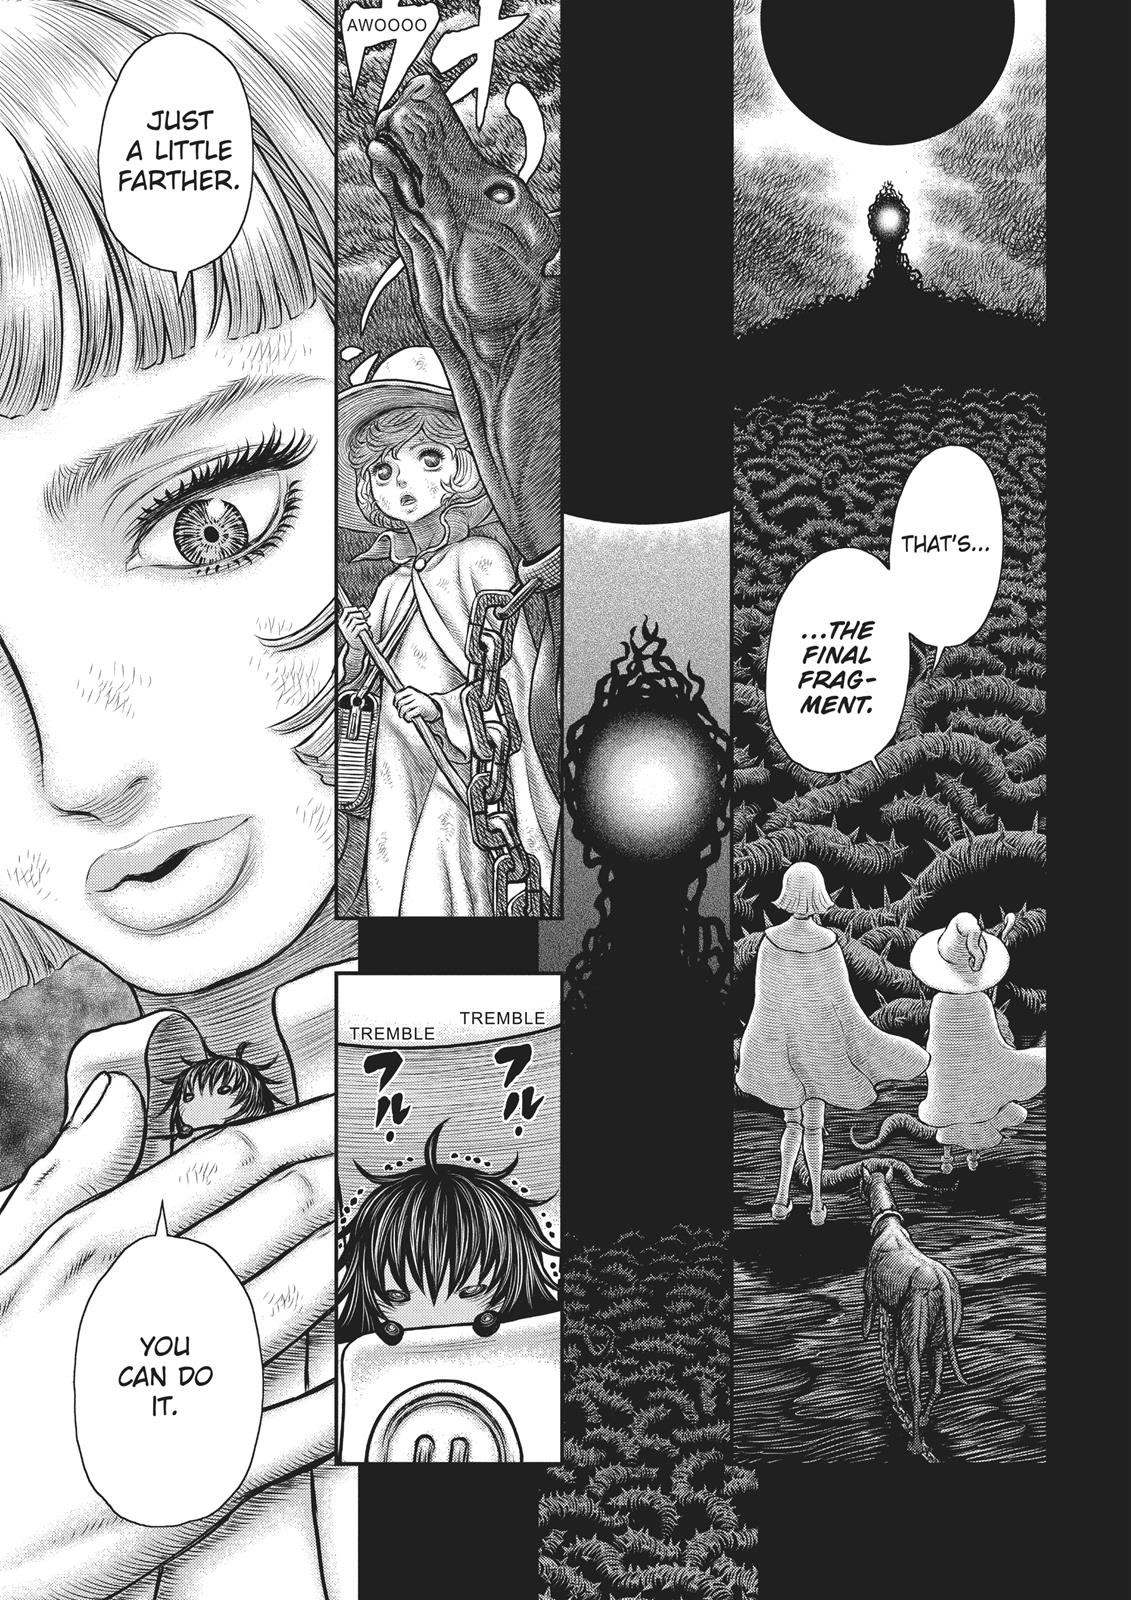 Berserk Manga Chapter 352 image 01